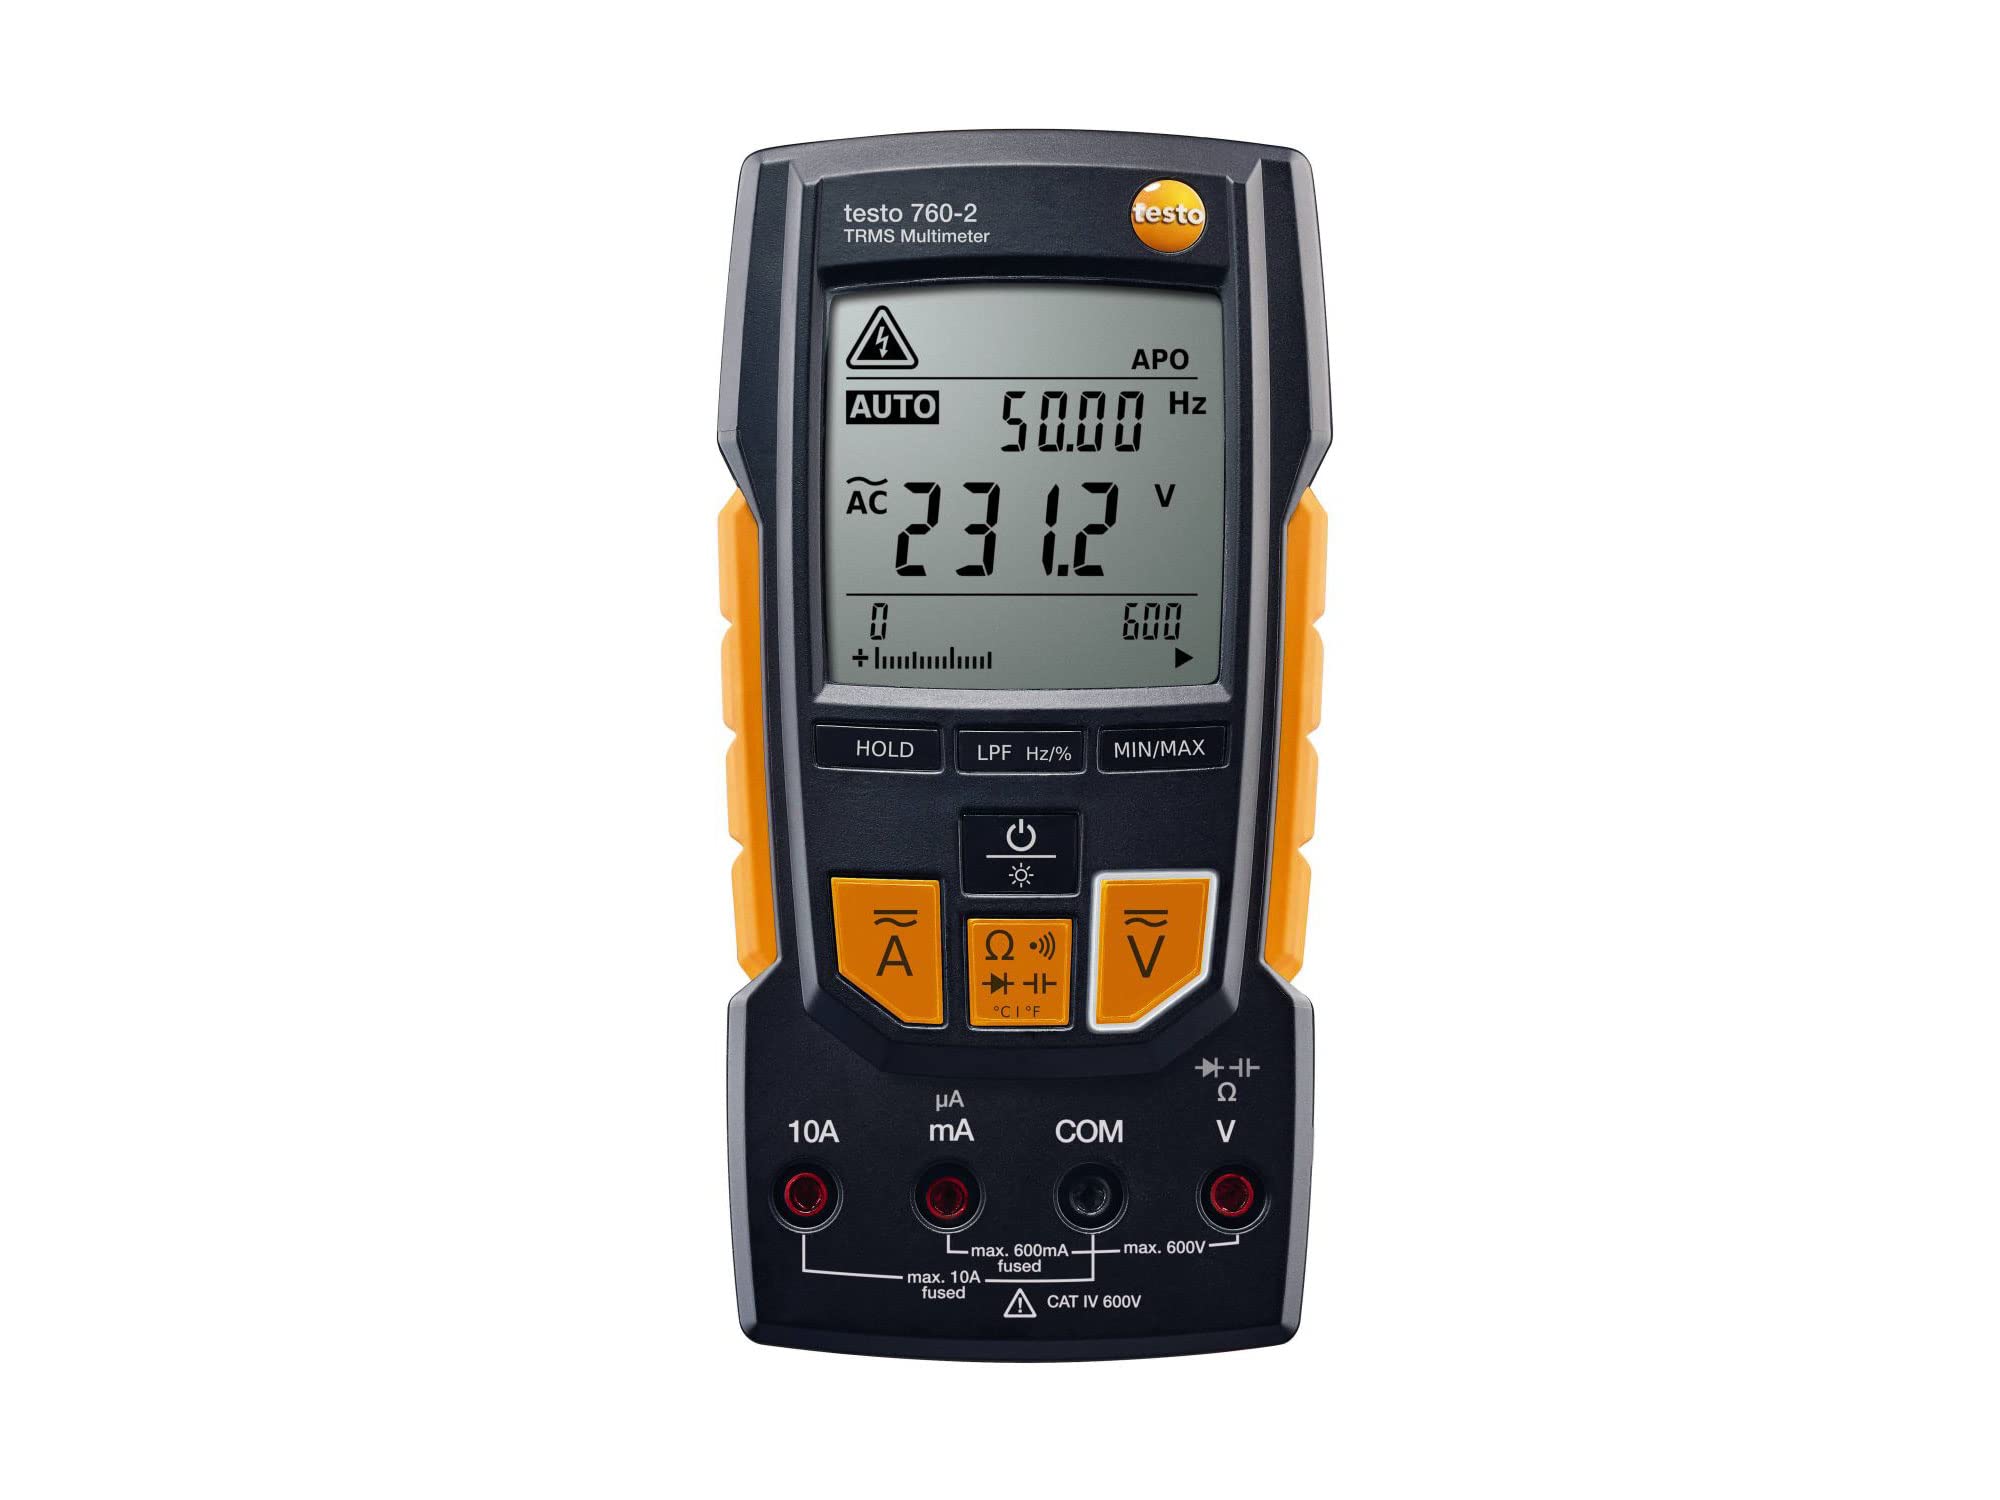 testo - 760-2 - 0590 7602 - Digital-Multimeter zur Messung von Strom, Spannung, Widerstand und vielen anderen elektrischen Parametern